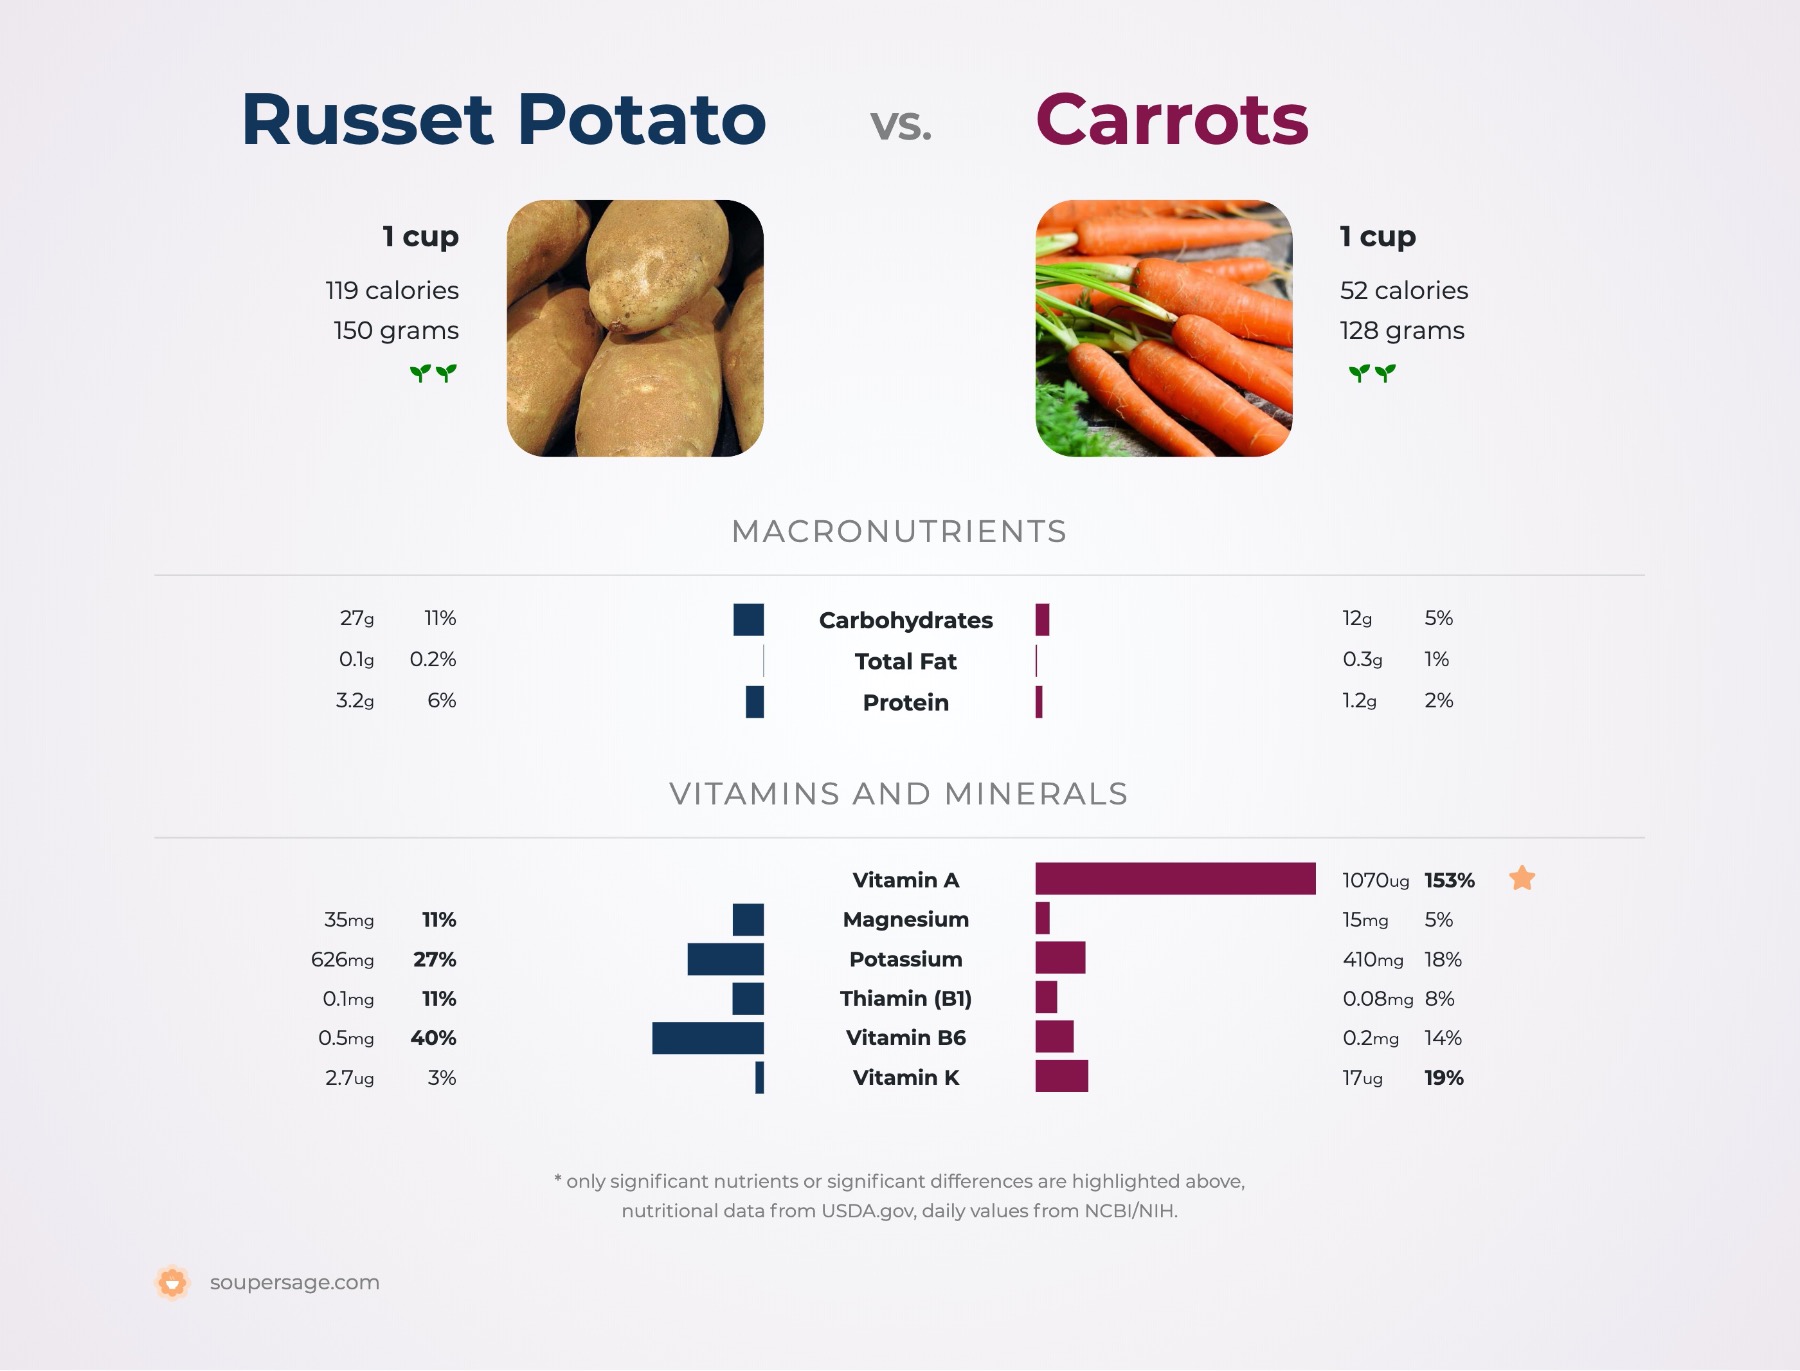 nutrition comparison of carrots vs. russet potato